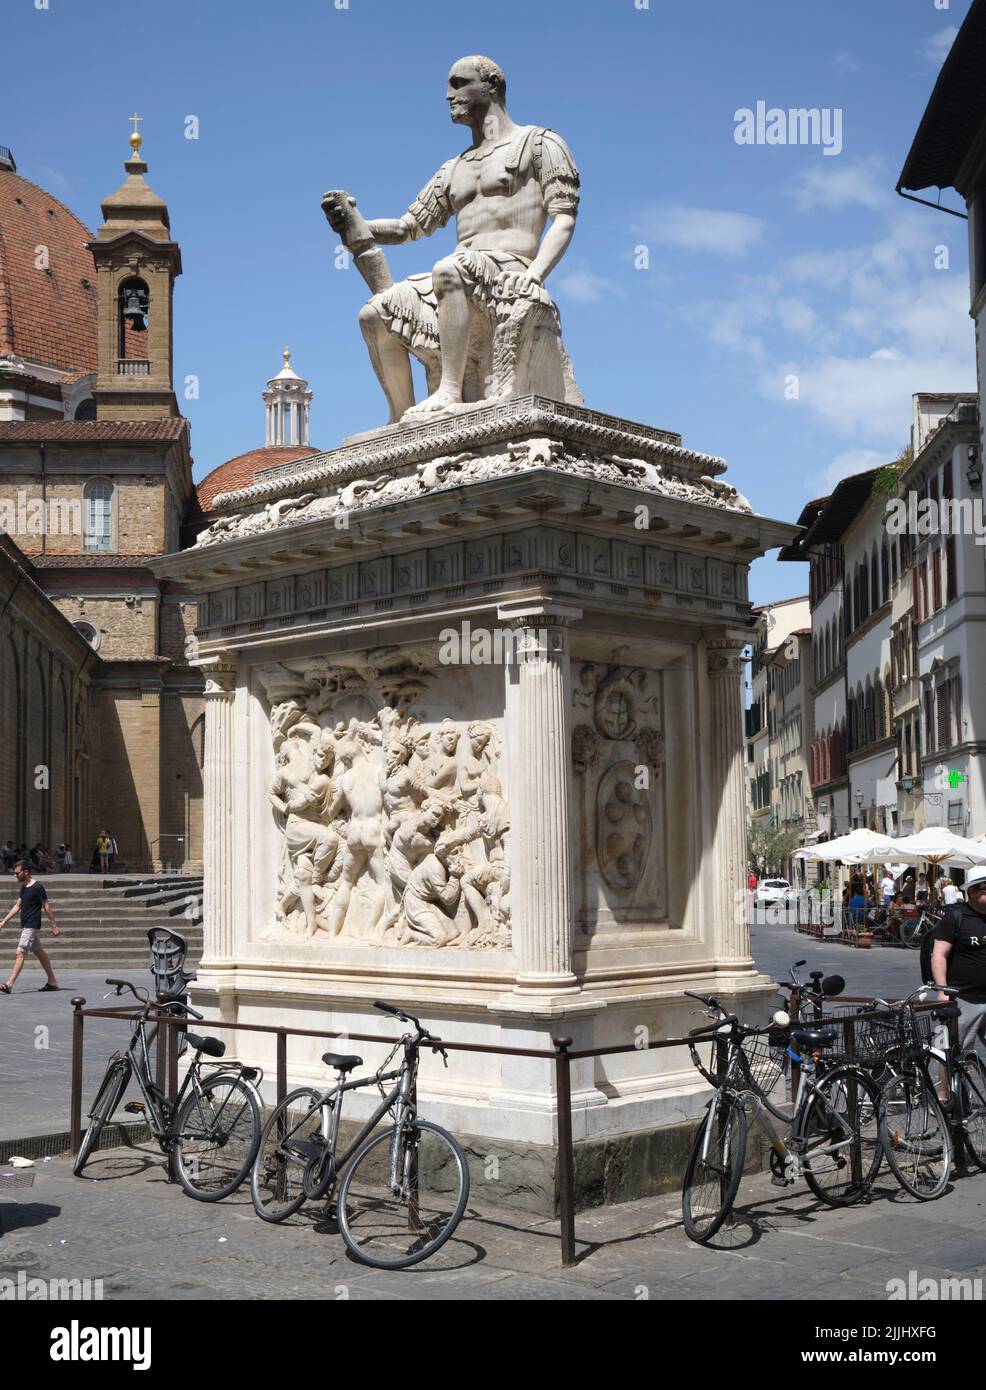 Statue of Giovanni delle Bande Nere (Lodovico de' Medici) by Baccio Bandinelli in the Piazza San Lorenzo Florence Italy Stock Photo